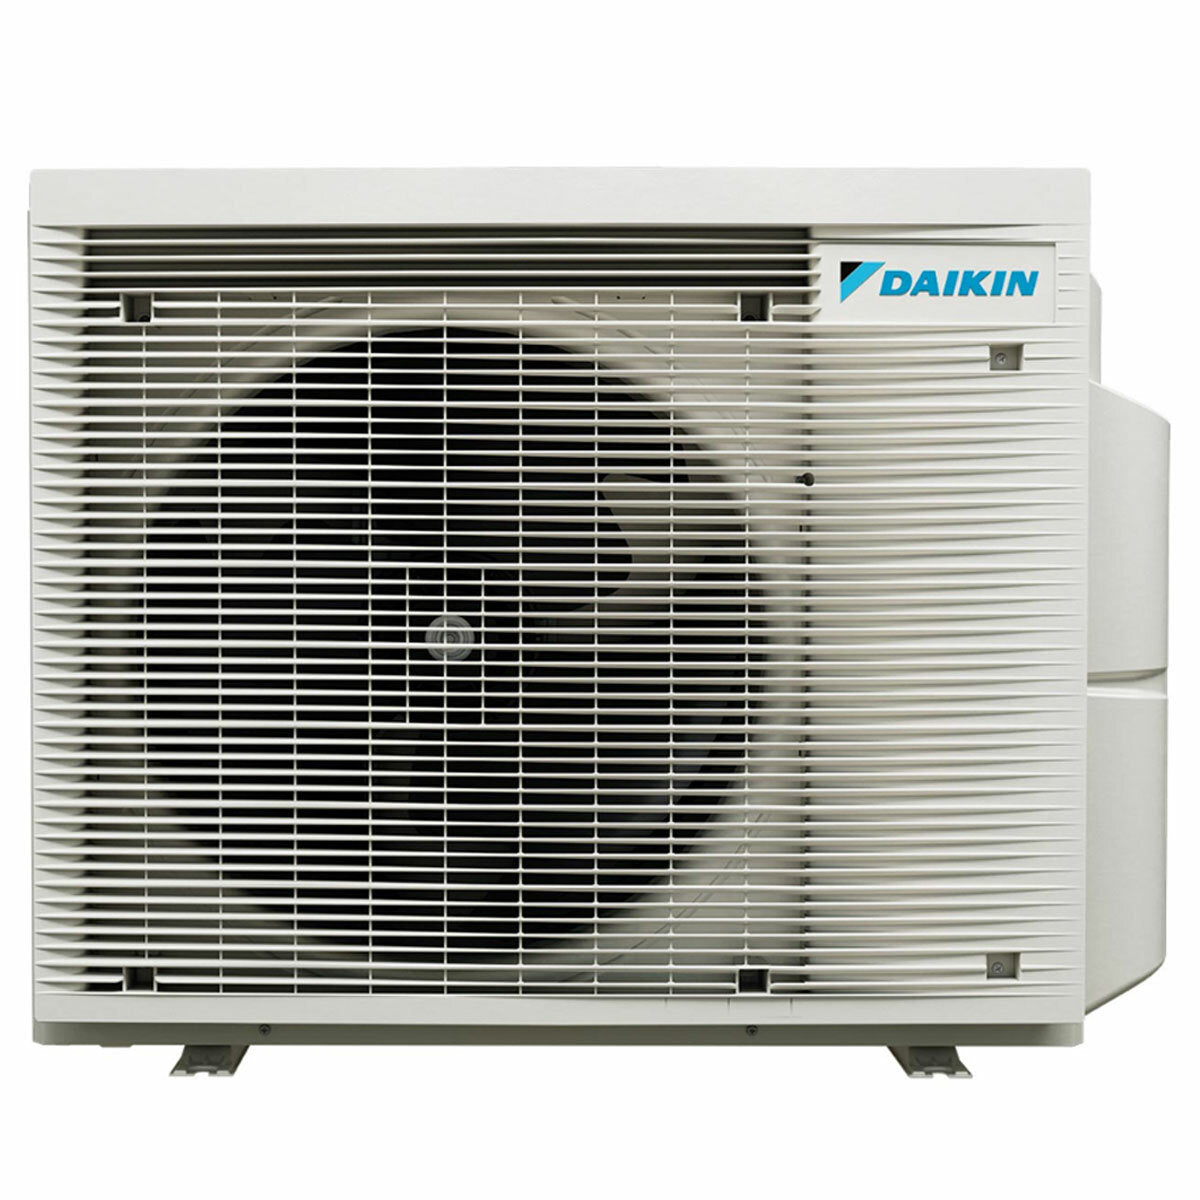 Daikin Stylish Trial Split Klimaanlage 7000 + 7000 + 15000 BTU Inverter A +++ WLAN Außengerät 5,2 kW